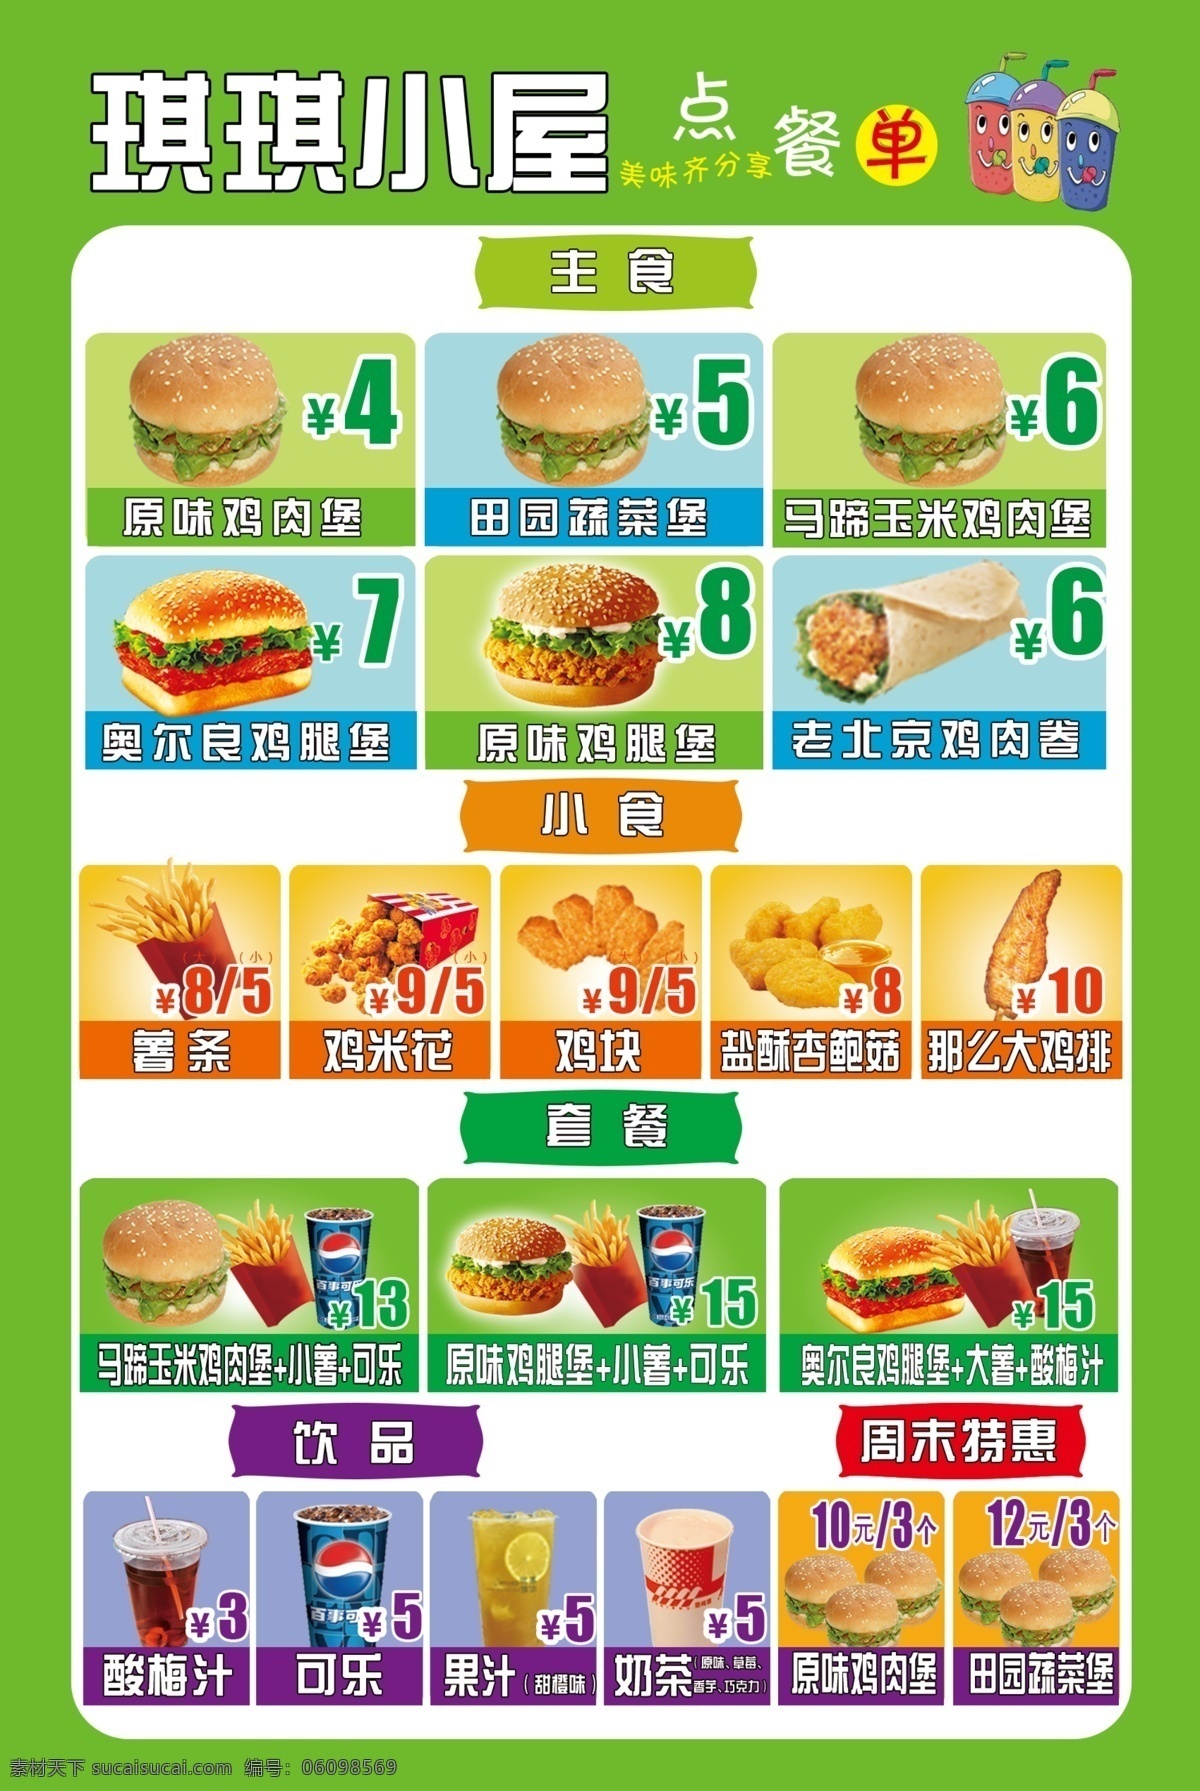 汉堡价格表 绿色 汉堡 饮料 价格表 套餐